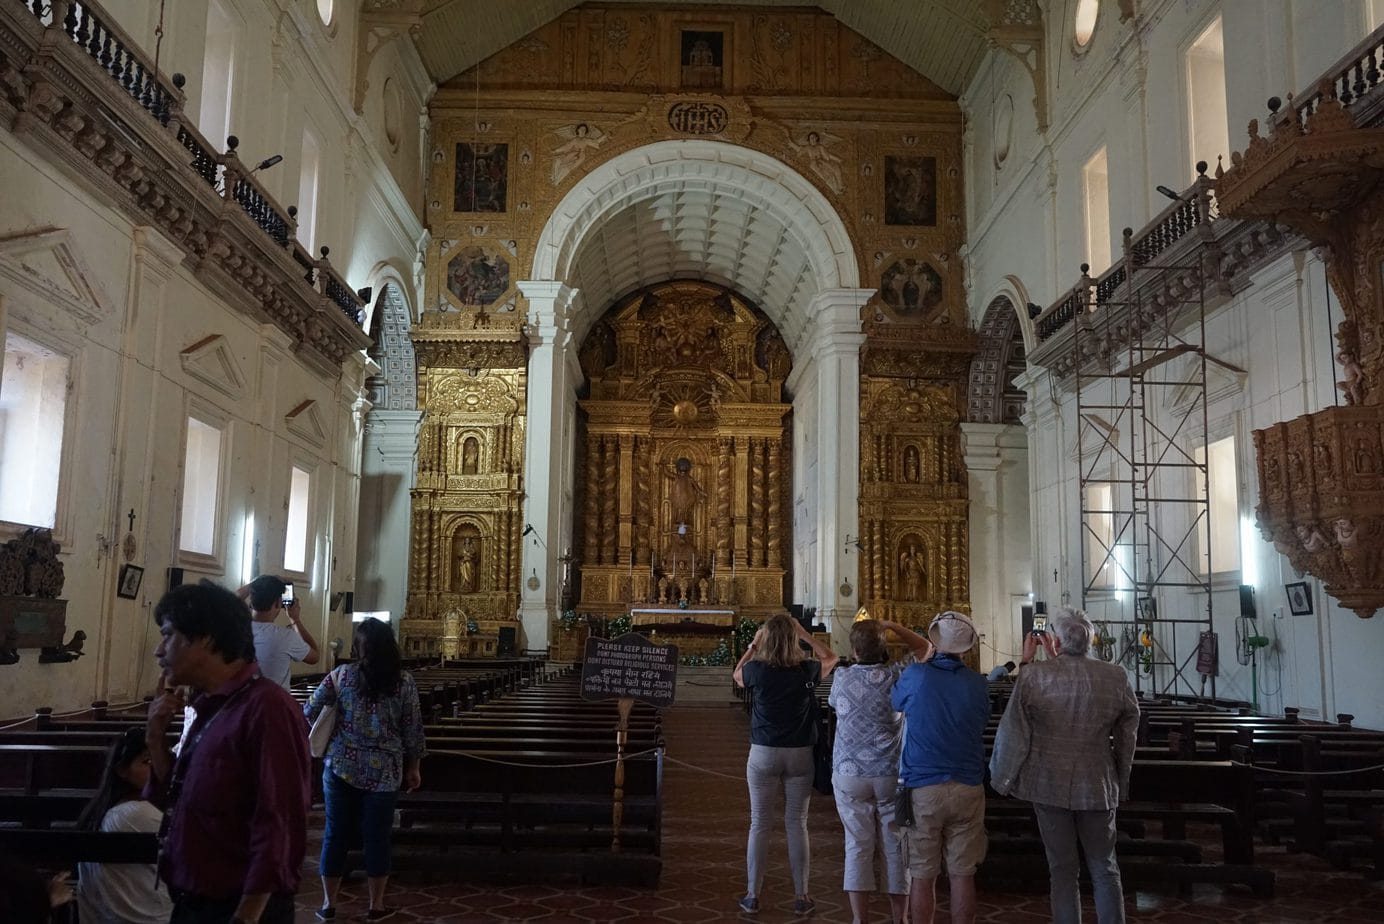 Hristiyanlık Basilica